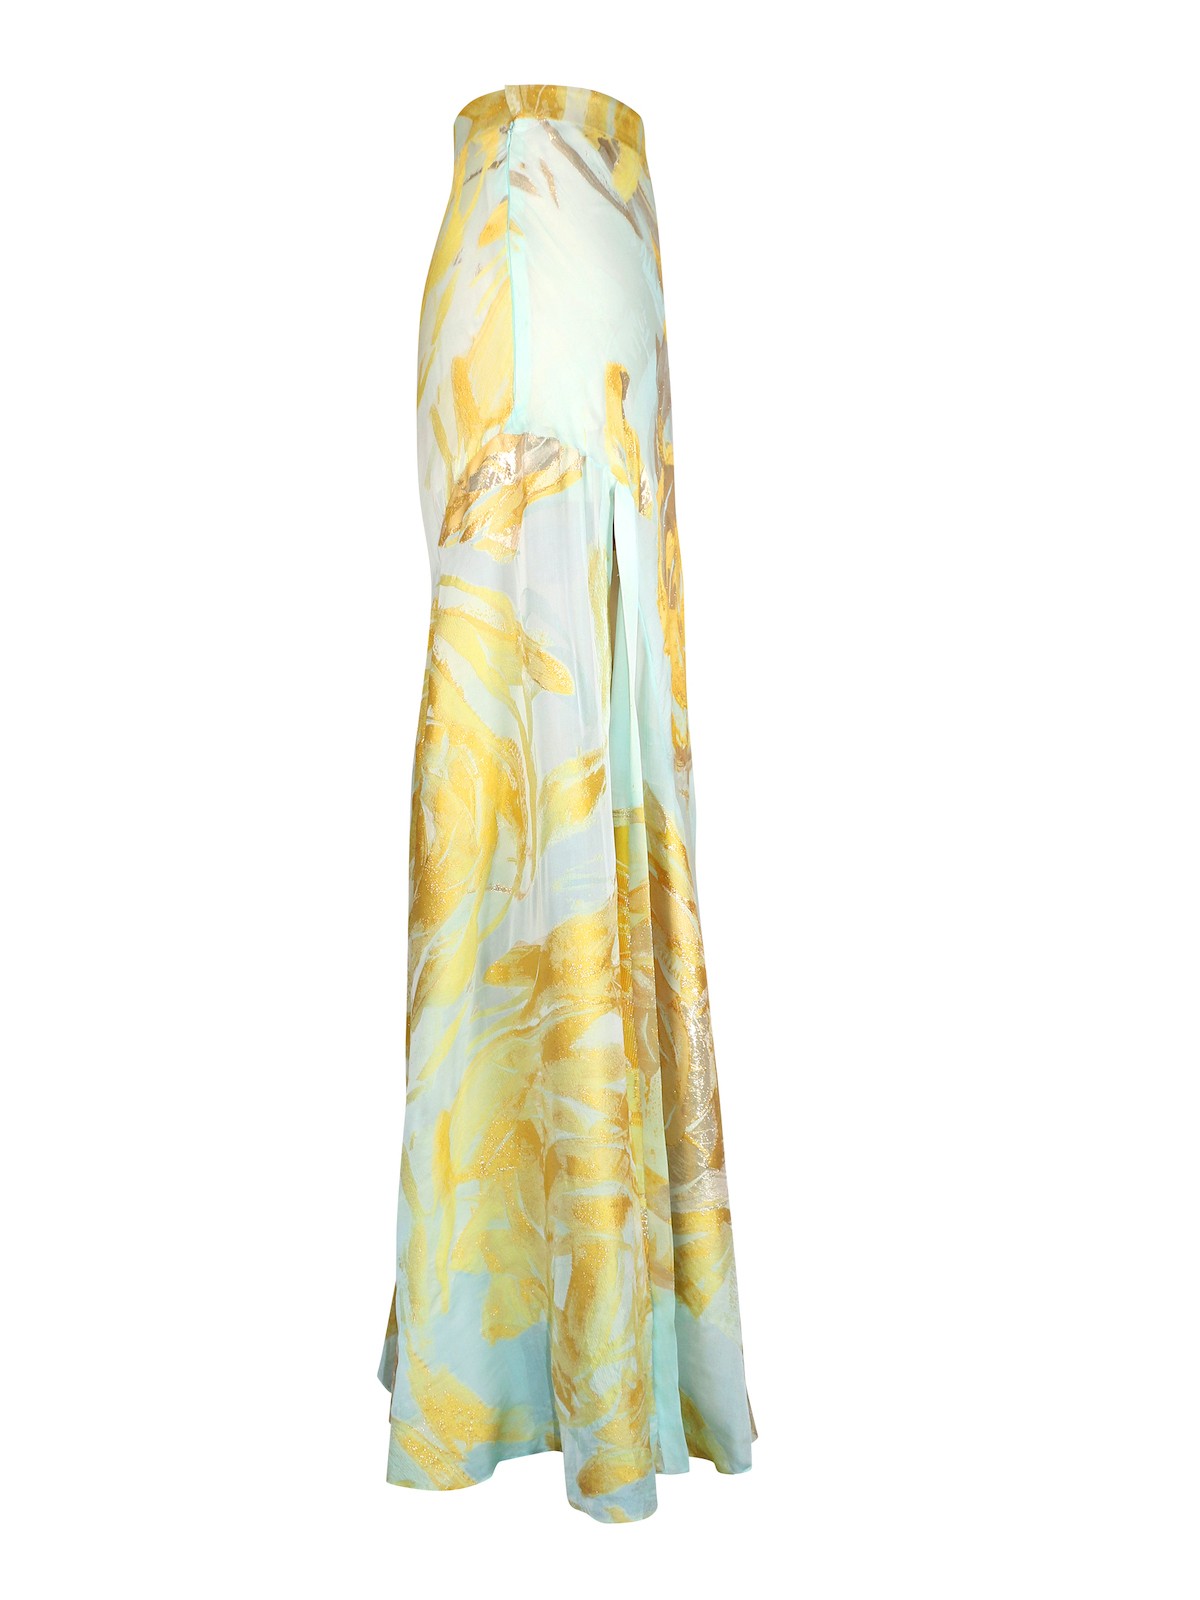 Azore Citrine Slit Long Skirt - SAFIRO Luxury Garments for Women